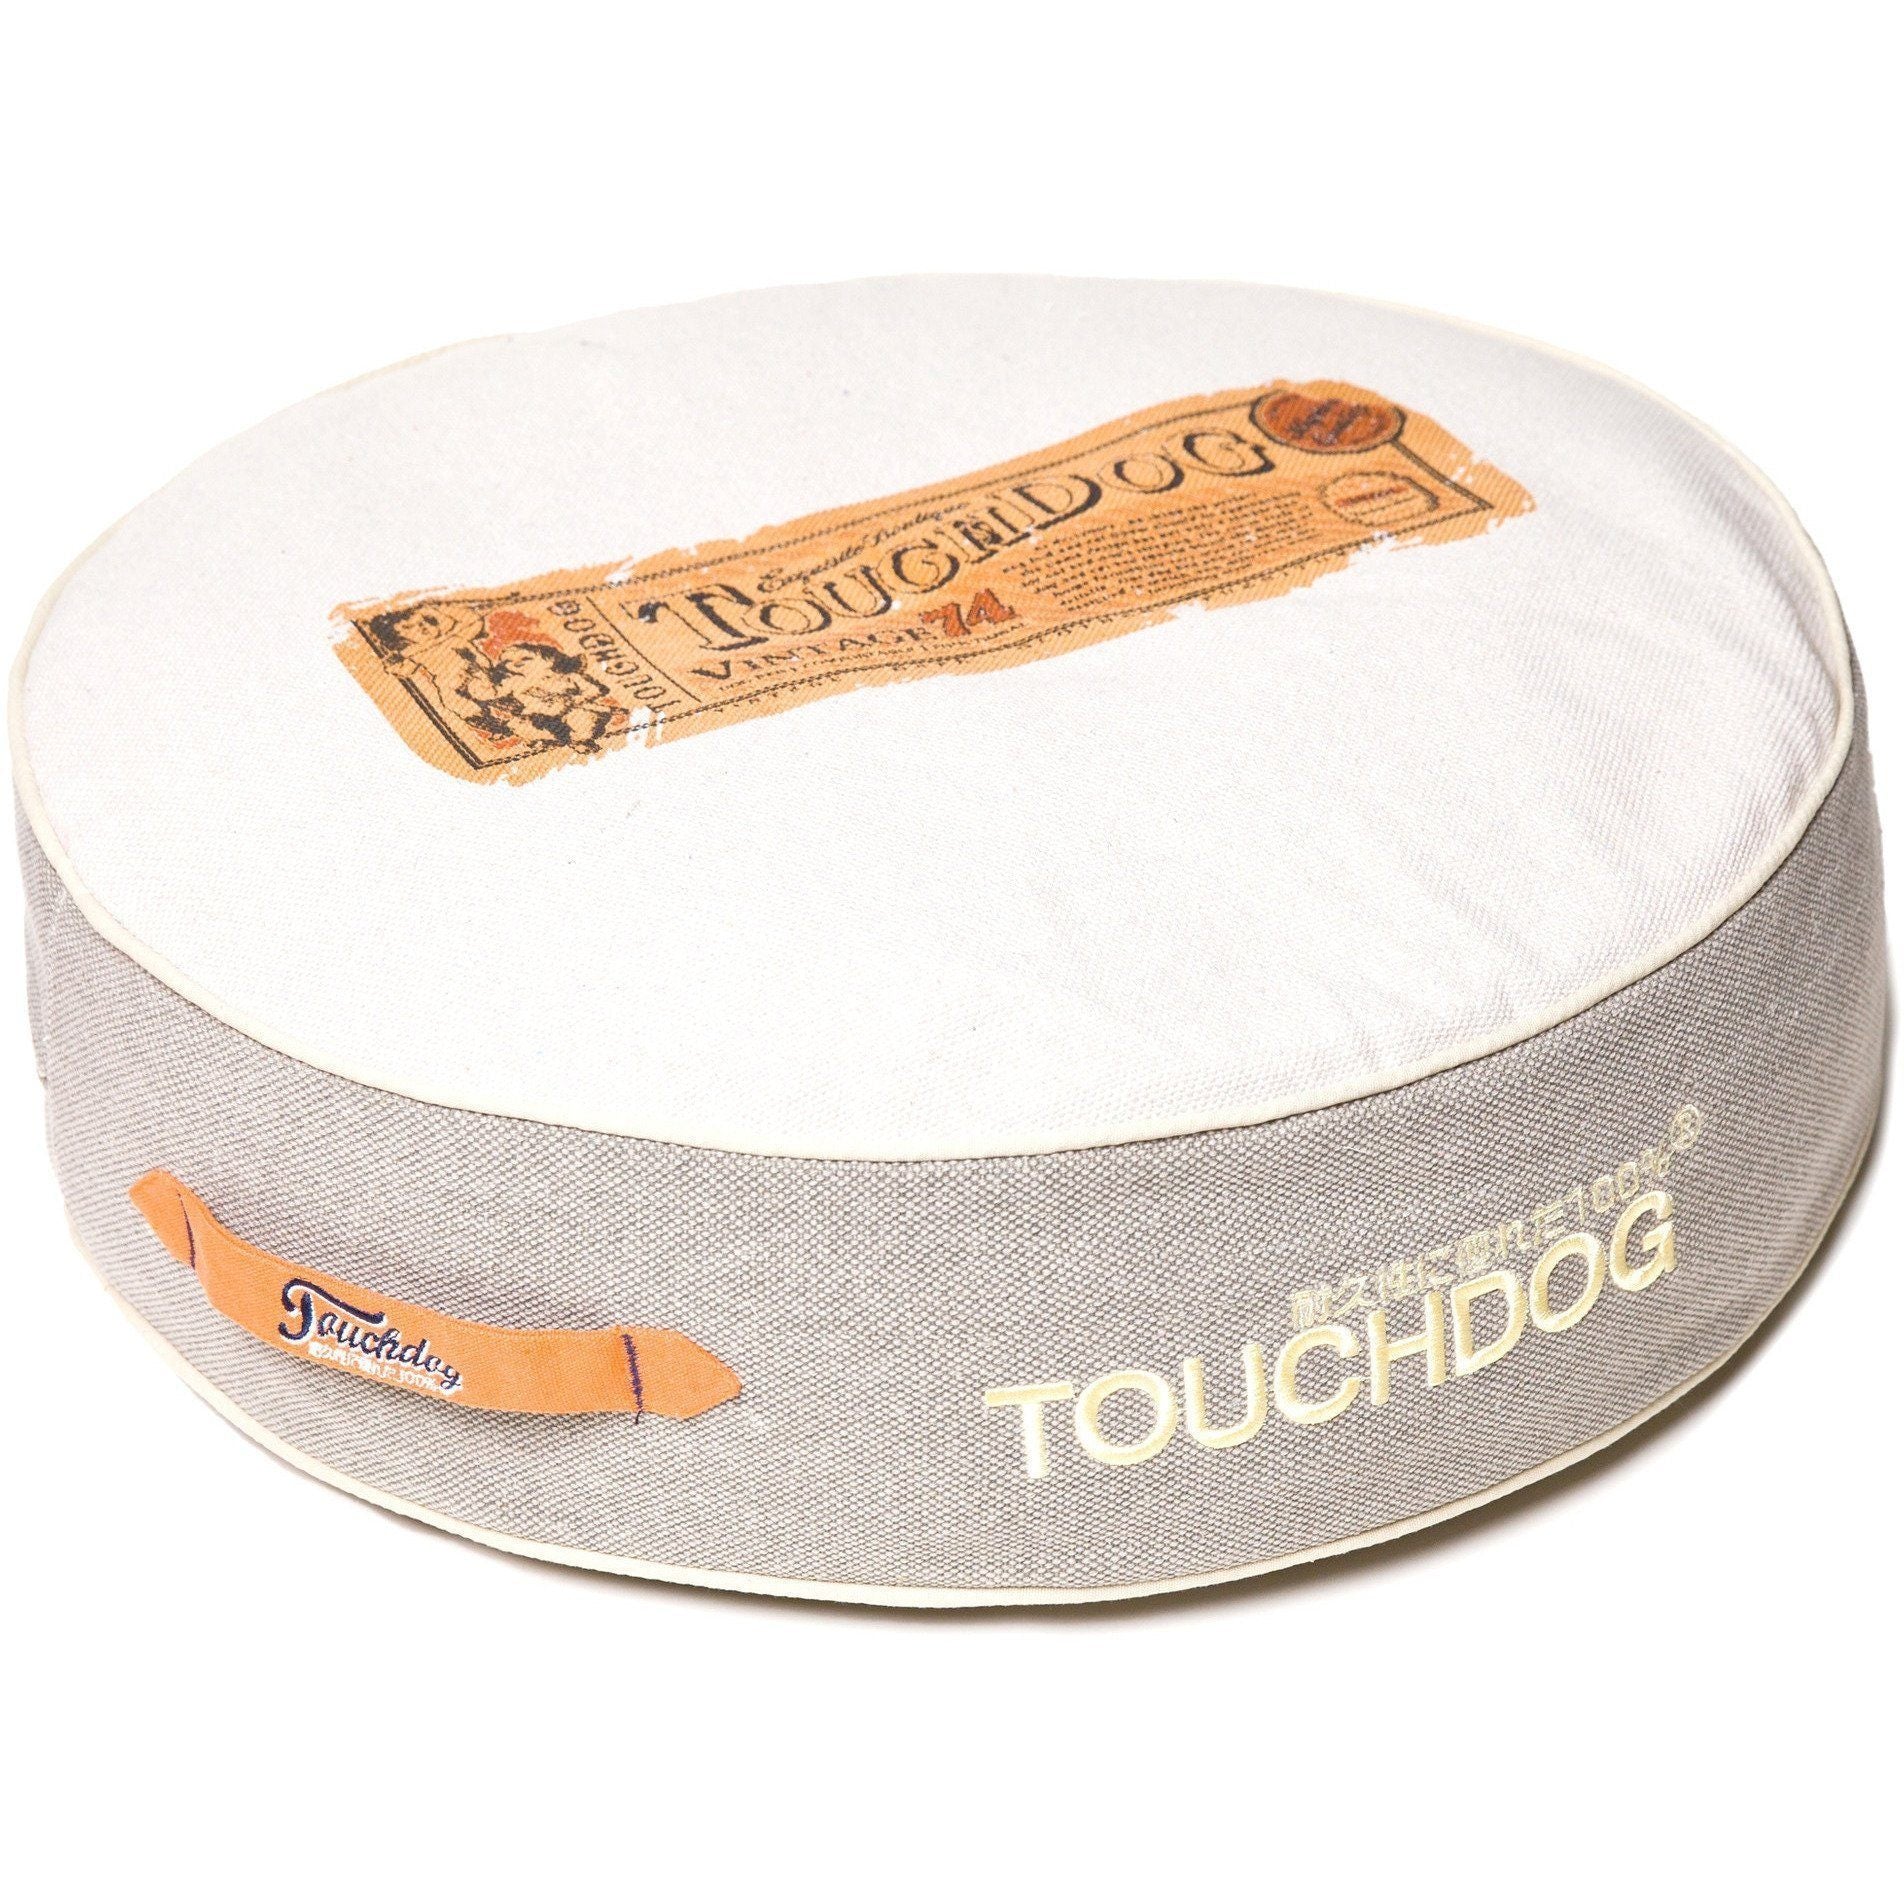 Touchdog ® 'Surround-View' Original Classical Denim Rounded Designer Dog Bed Grey, Beige White 